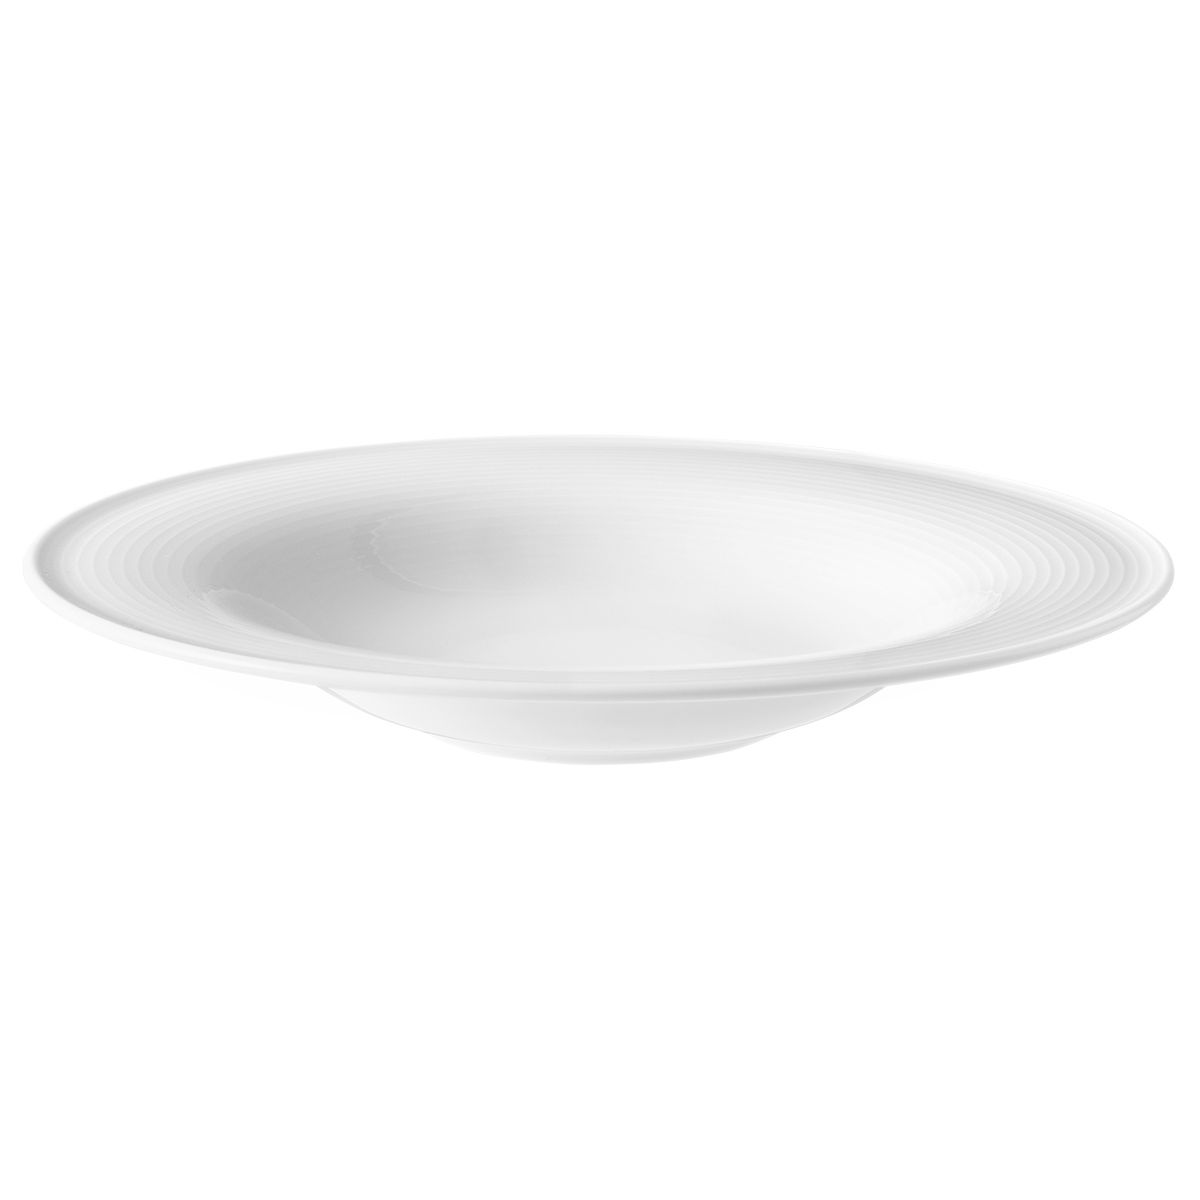 Pasta-/Salatteller 27,5 cm